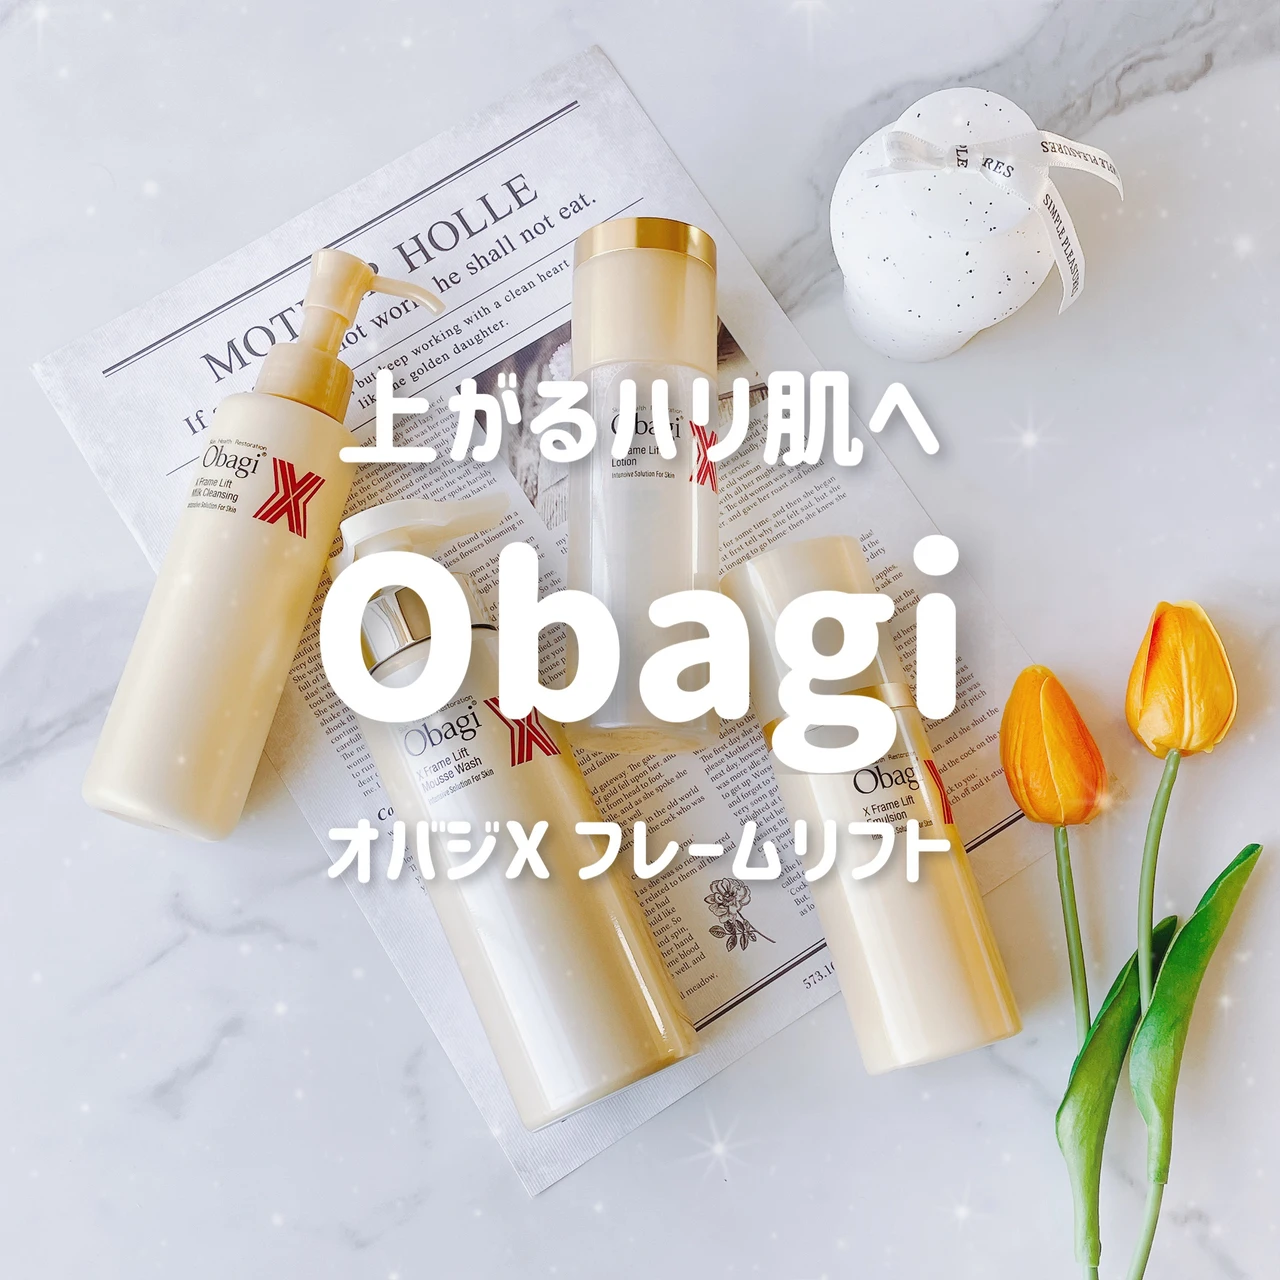 【Obagi（オバジ）】オバジX ベースケアシリーズがリニューアル★気になる使い心地、商品特徴をご紹介。動画解説あり_1